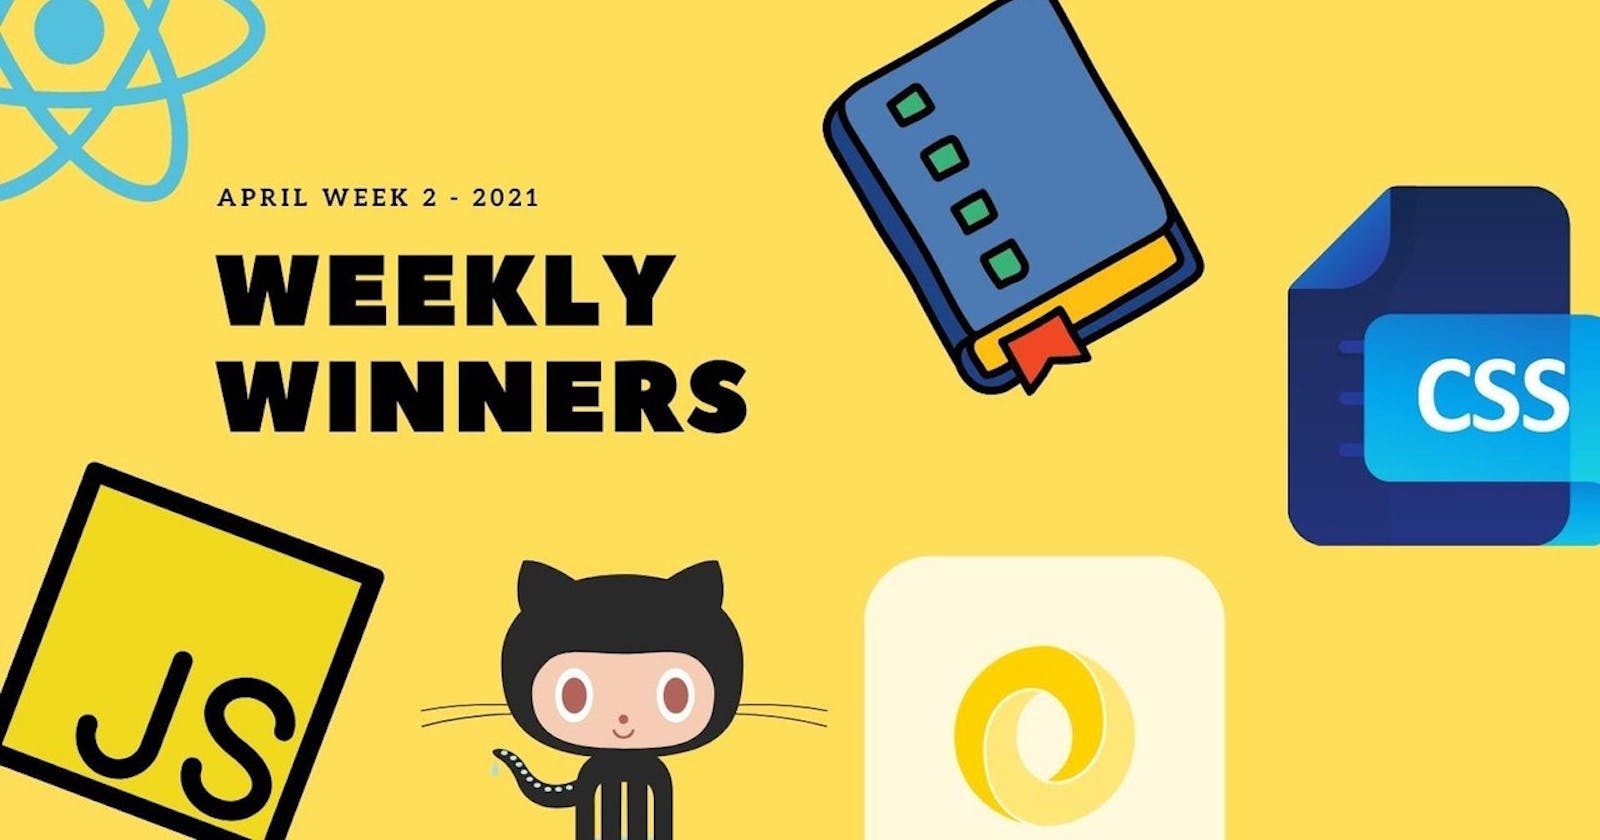 DevDojo Weekly Winners Week 2 April 2021